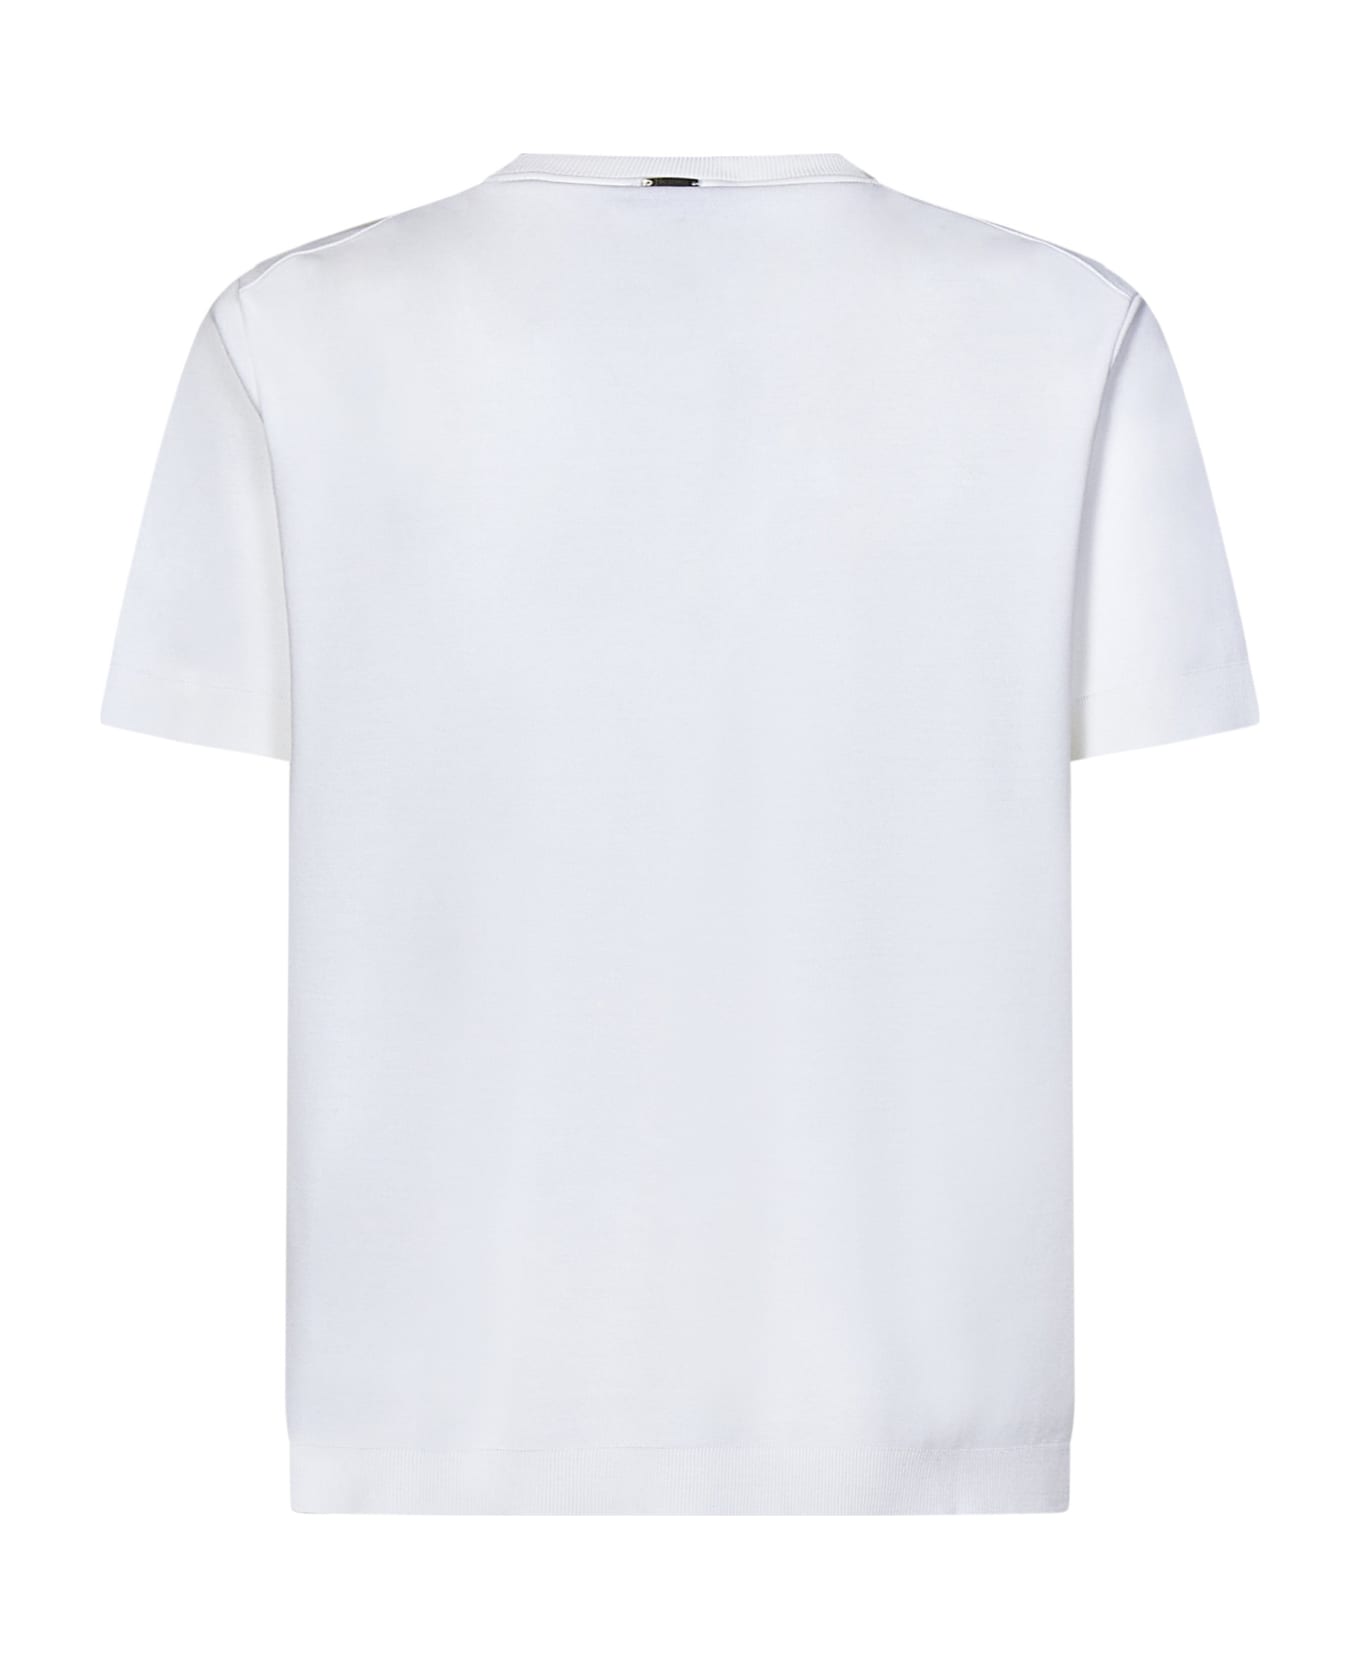 Herno T-shirt - White